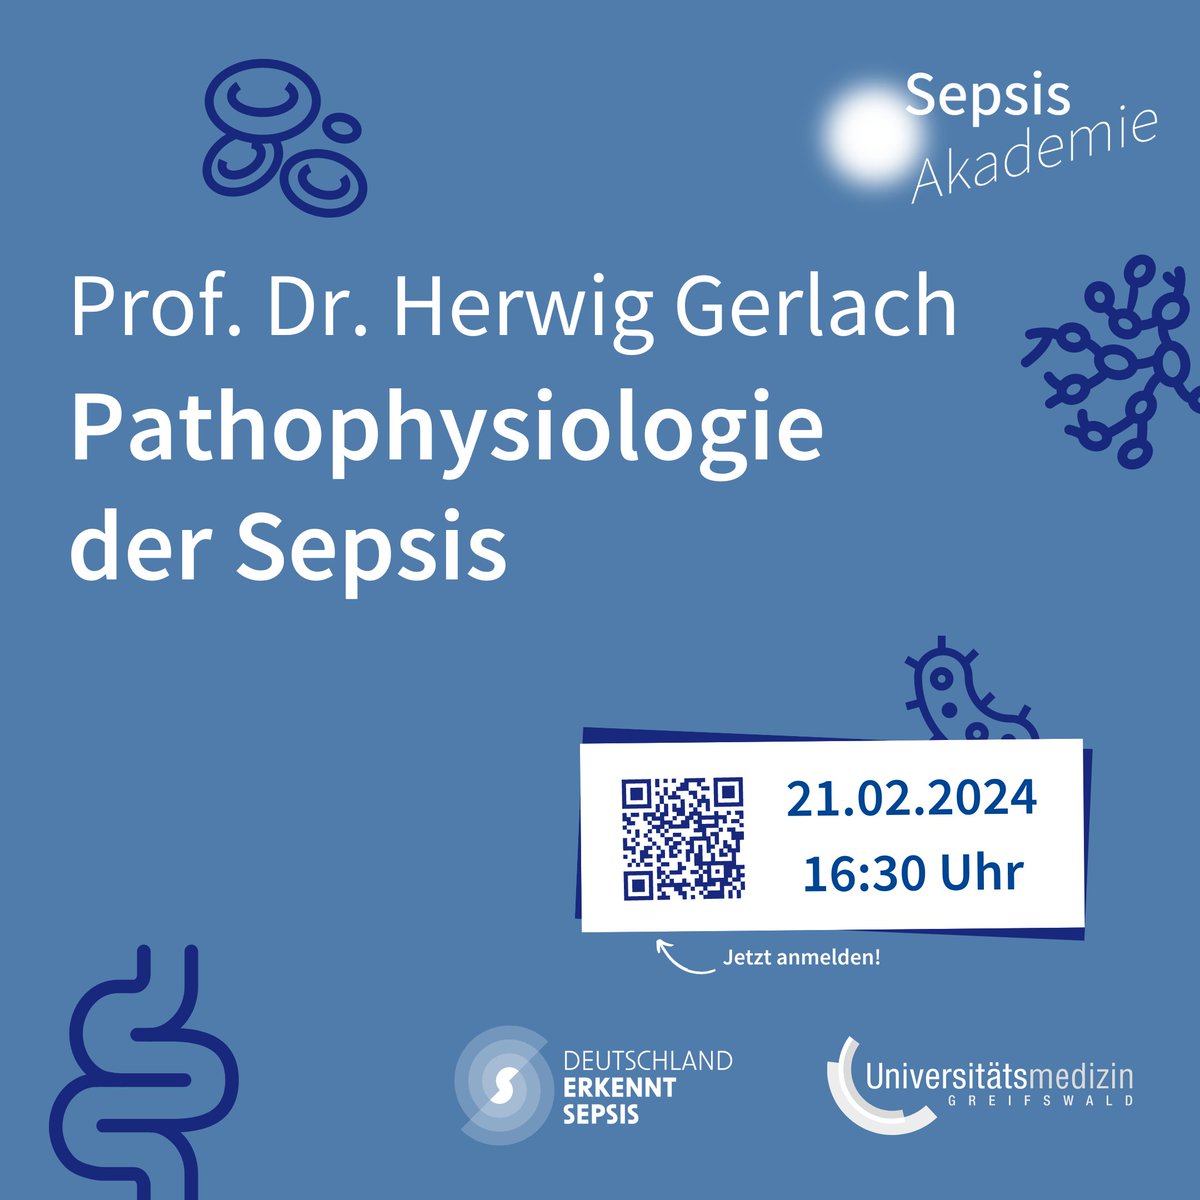 ⚡ Prof. Dr. Herwig Gerlach – Pathophysiologie der Sepsis 📅 Am 21. Februar um 16:30 Uhr findet die nächste SepsisAkademie statt. 🔗Zur Anmeldung: sepsisakademie.de/sa02-24